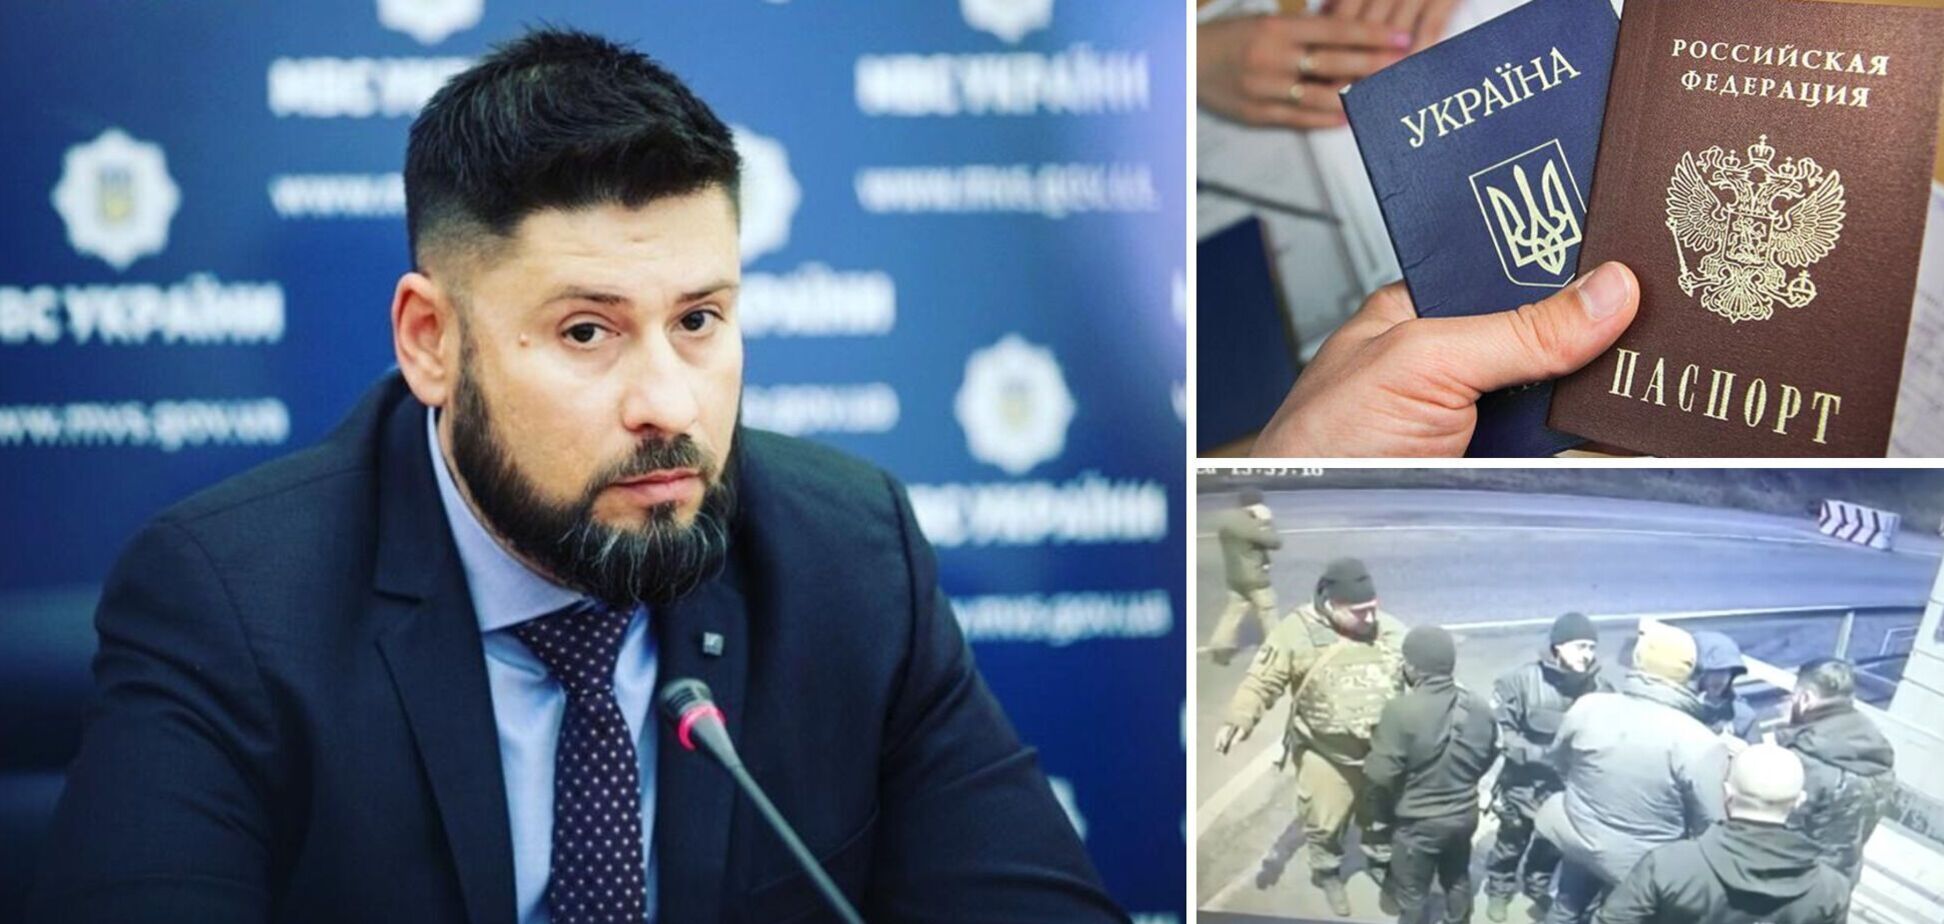 Гогилашвили заявил, что сам написал заявление на увольнение после скандала: я виноват, мне стыдно